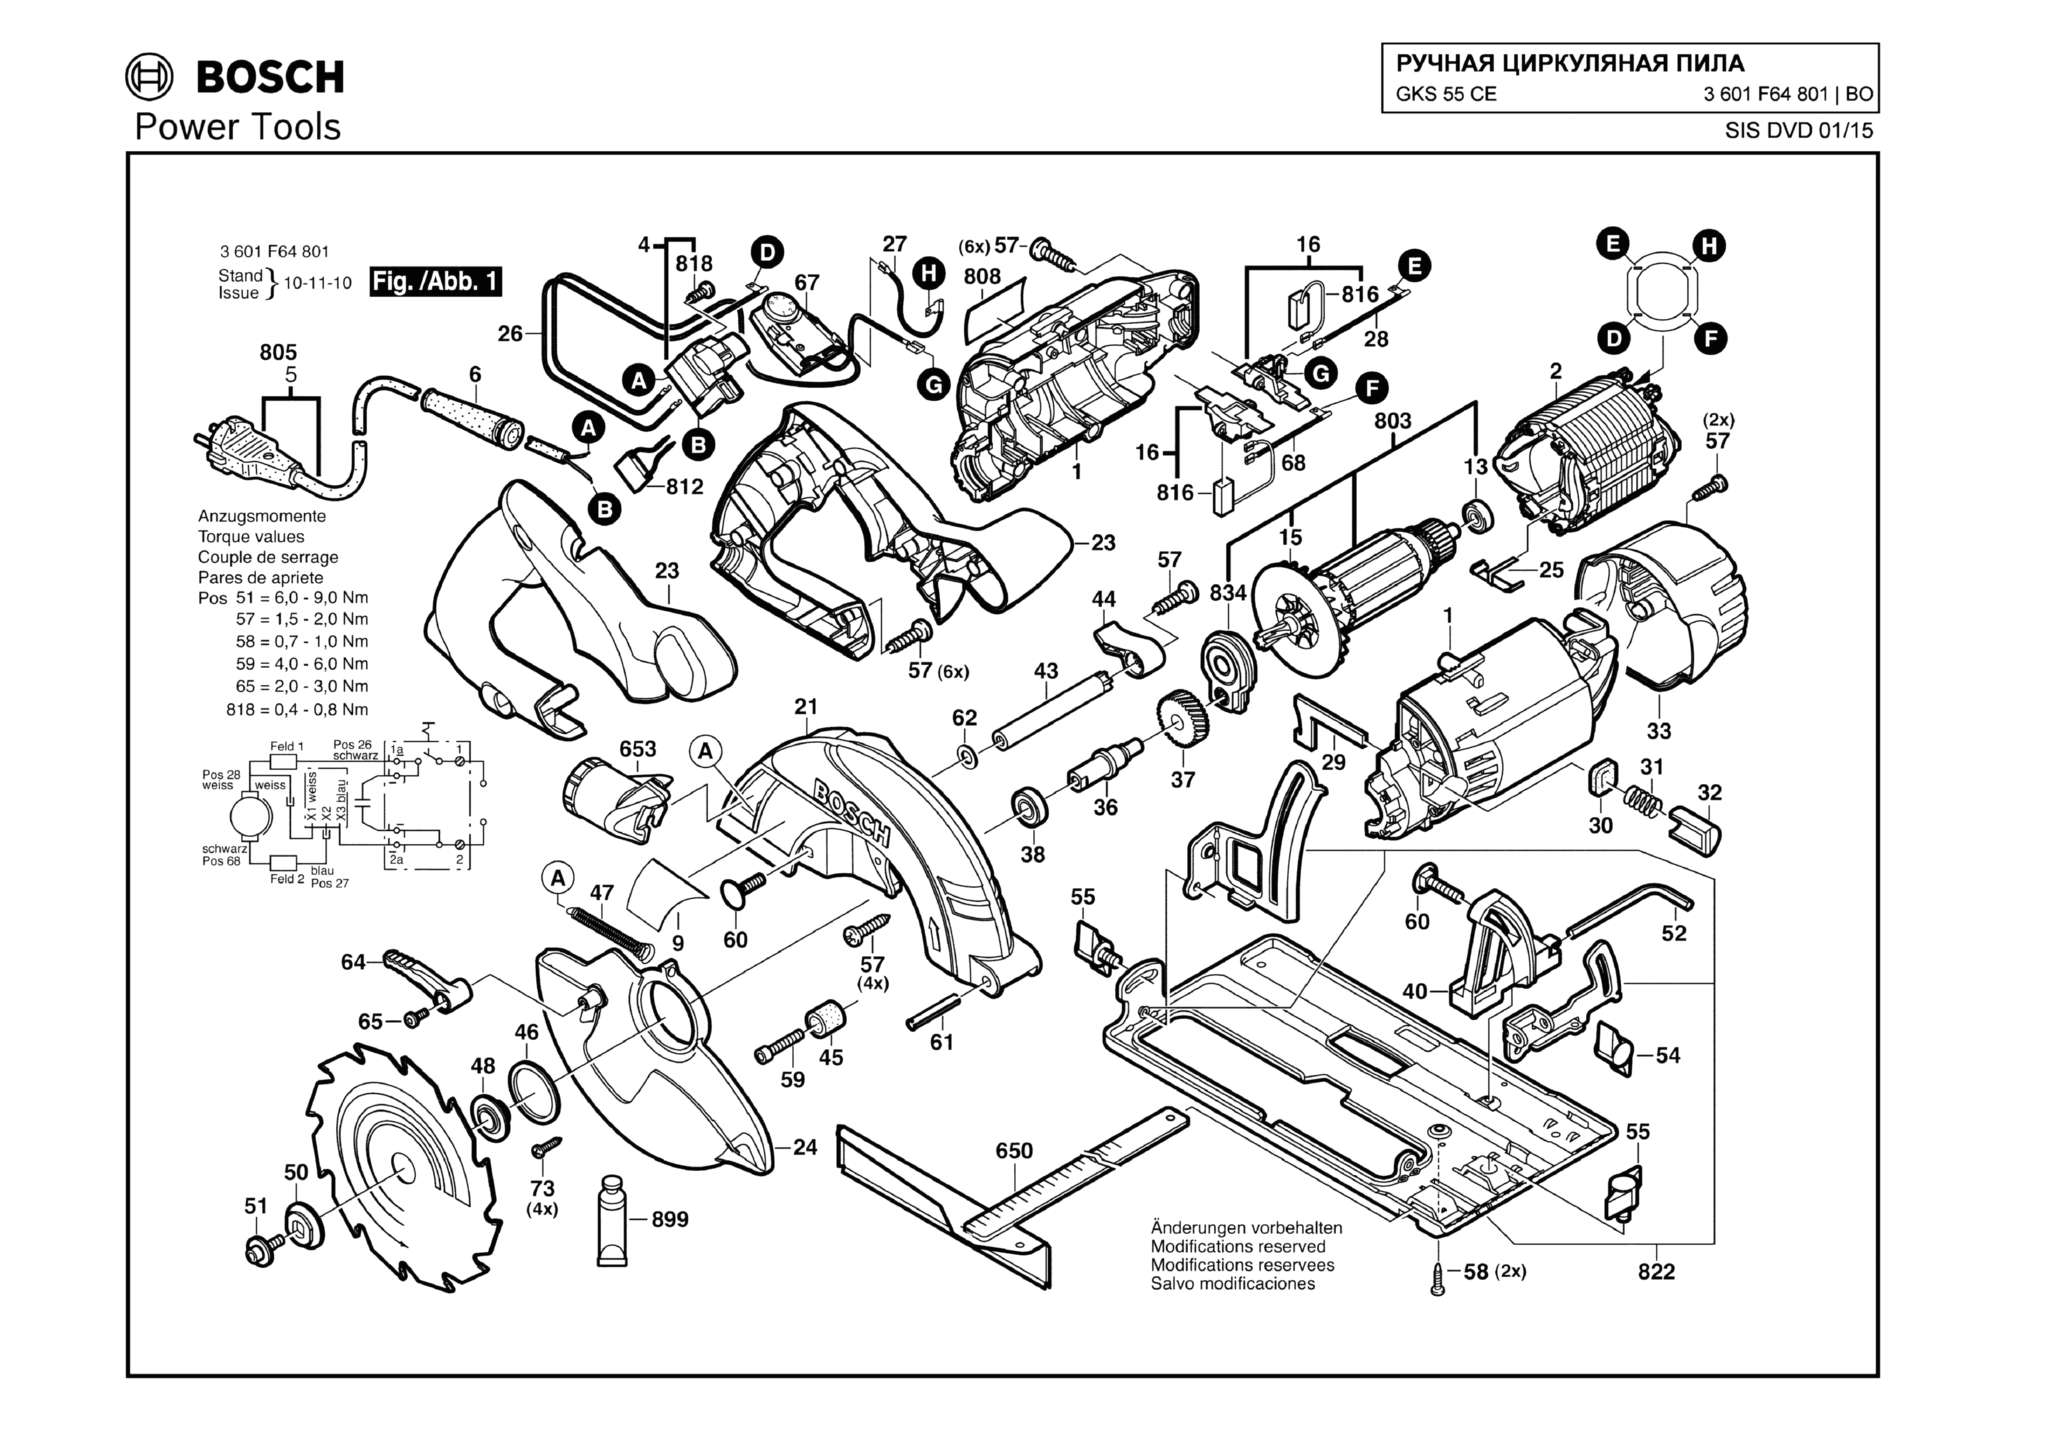 Запчасти, схема и деталировка Bosch GKS 55 CE (ТИП 3601F64801)